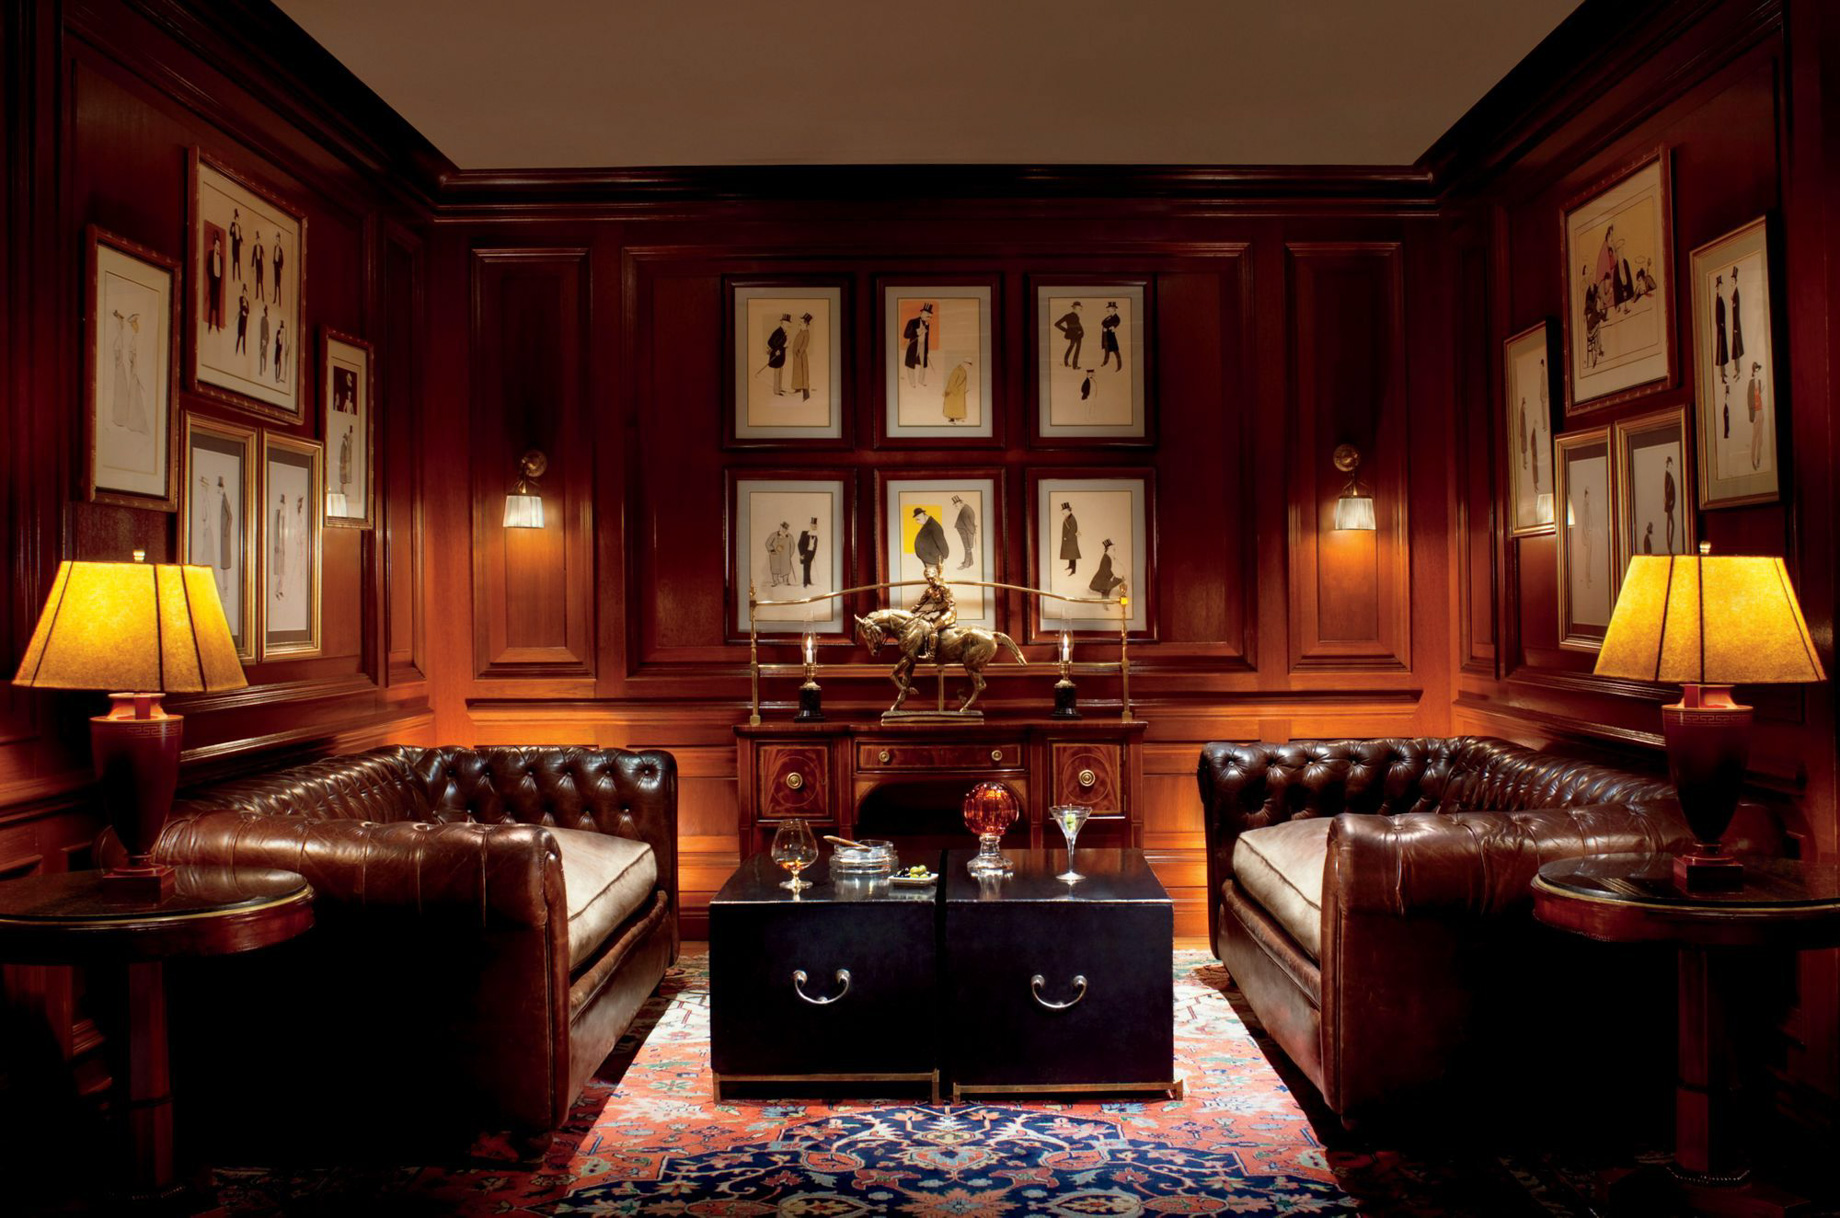 The Ritz-Carlton, Santiago Hotel – Santiago, Chile – The Ritz-Carlton Bar Interior